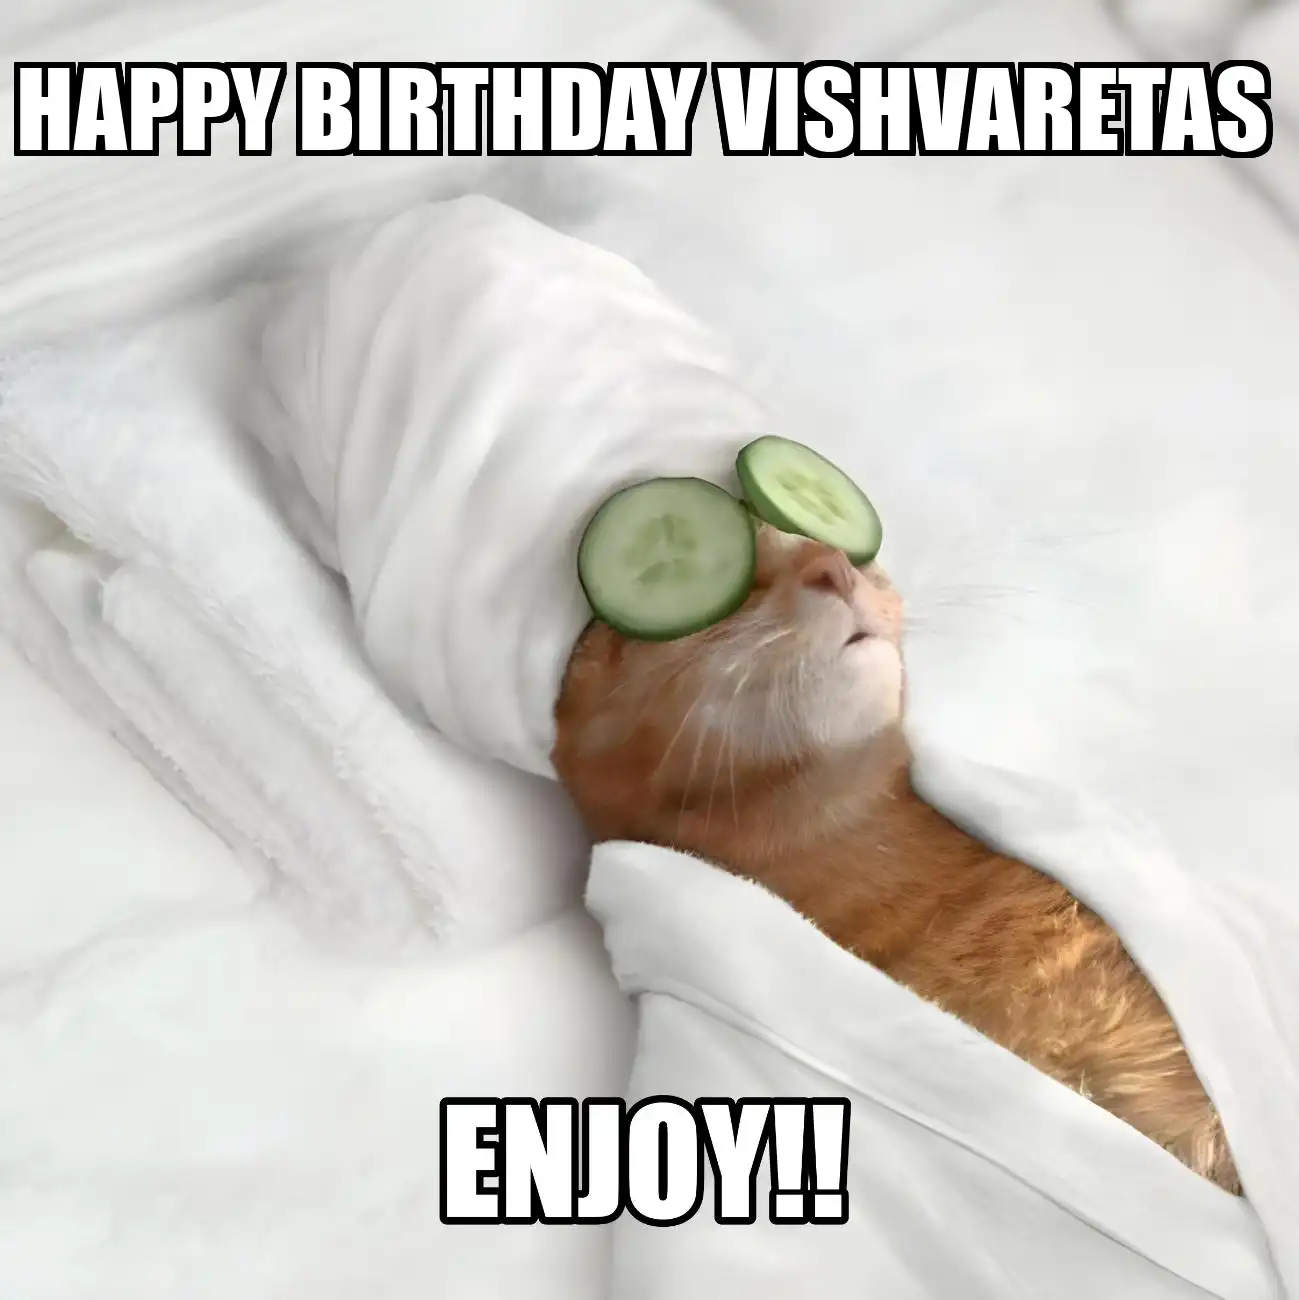 Happy Birthday Vishvaretas Enjoy Cat Meme